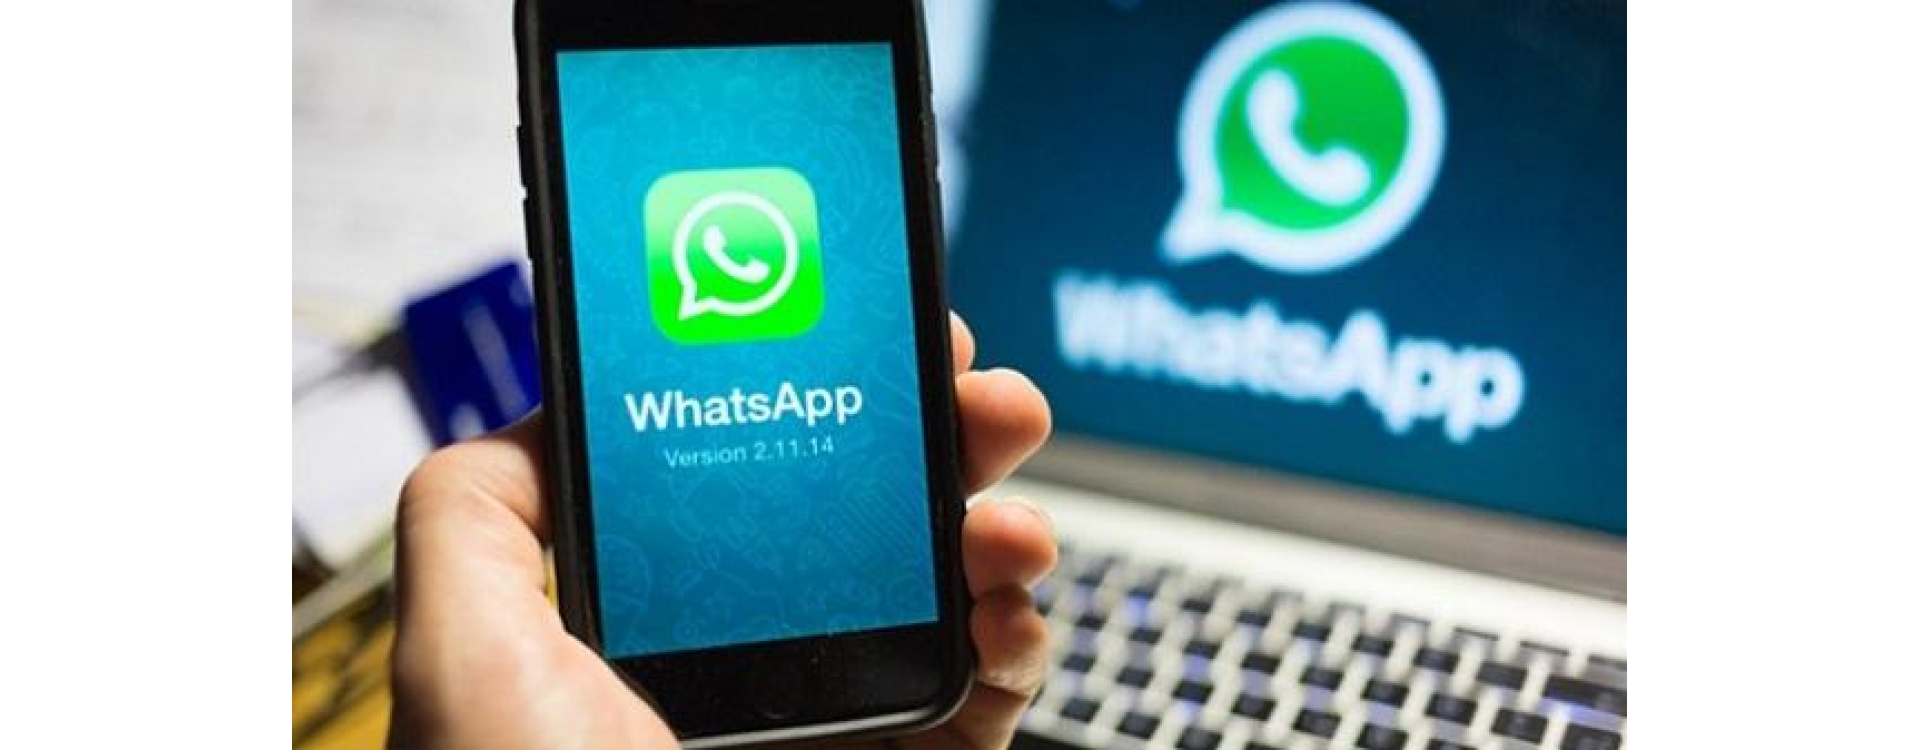 WhatsApp caiu? App passa por instabilidade no Brasil e mundo 